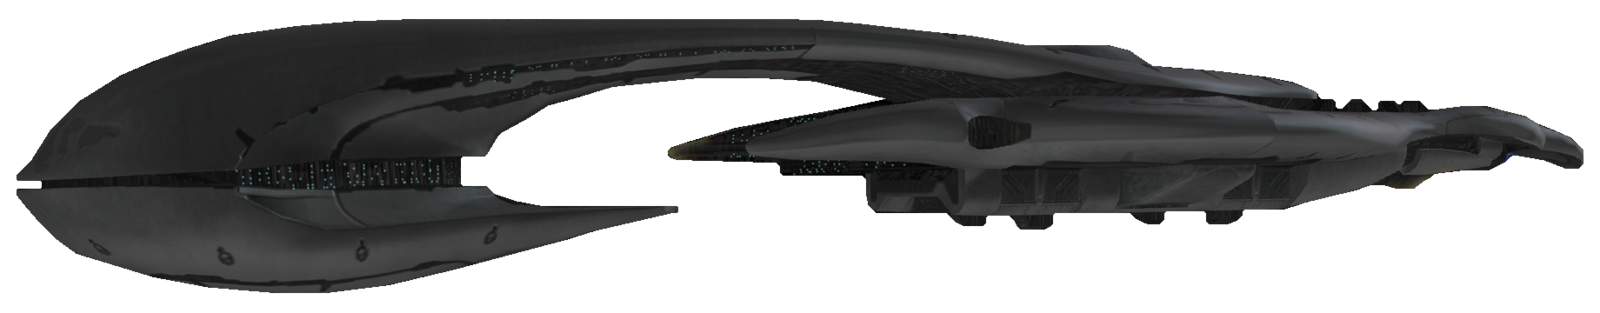 【HALO舰船频道3】CAS级攻击母舰 —— 星盟舰队理想的旗舰-第17张